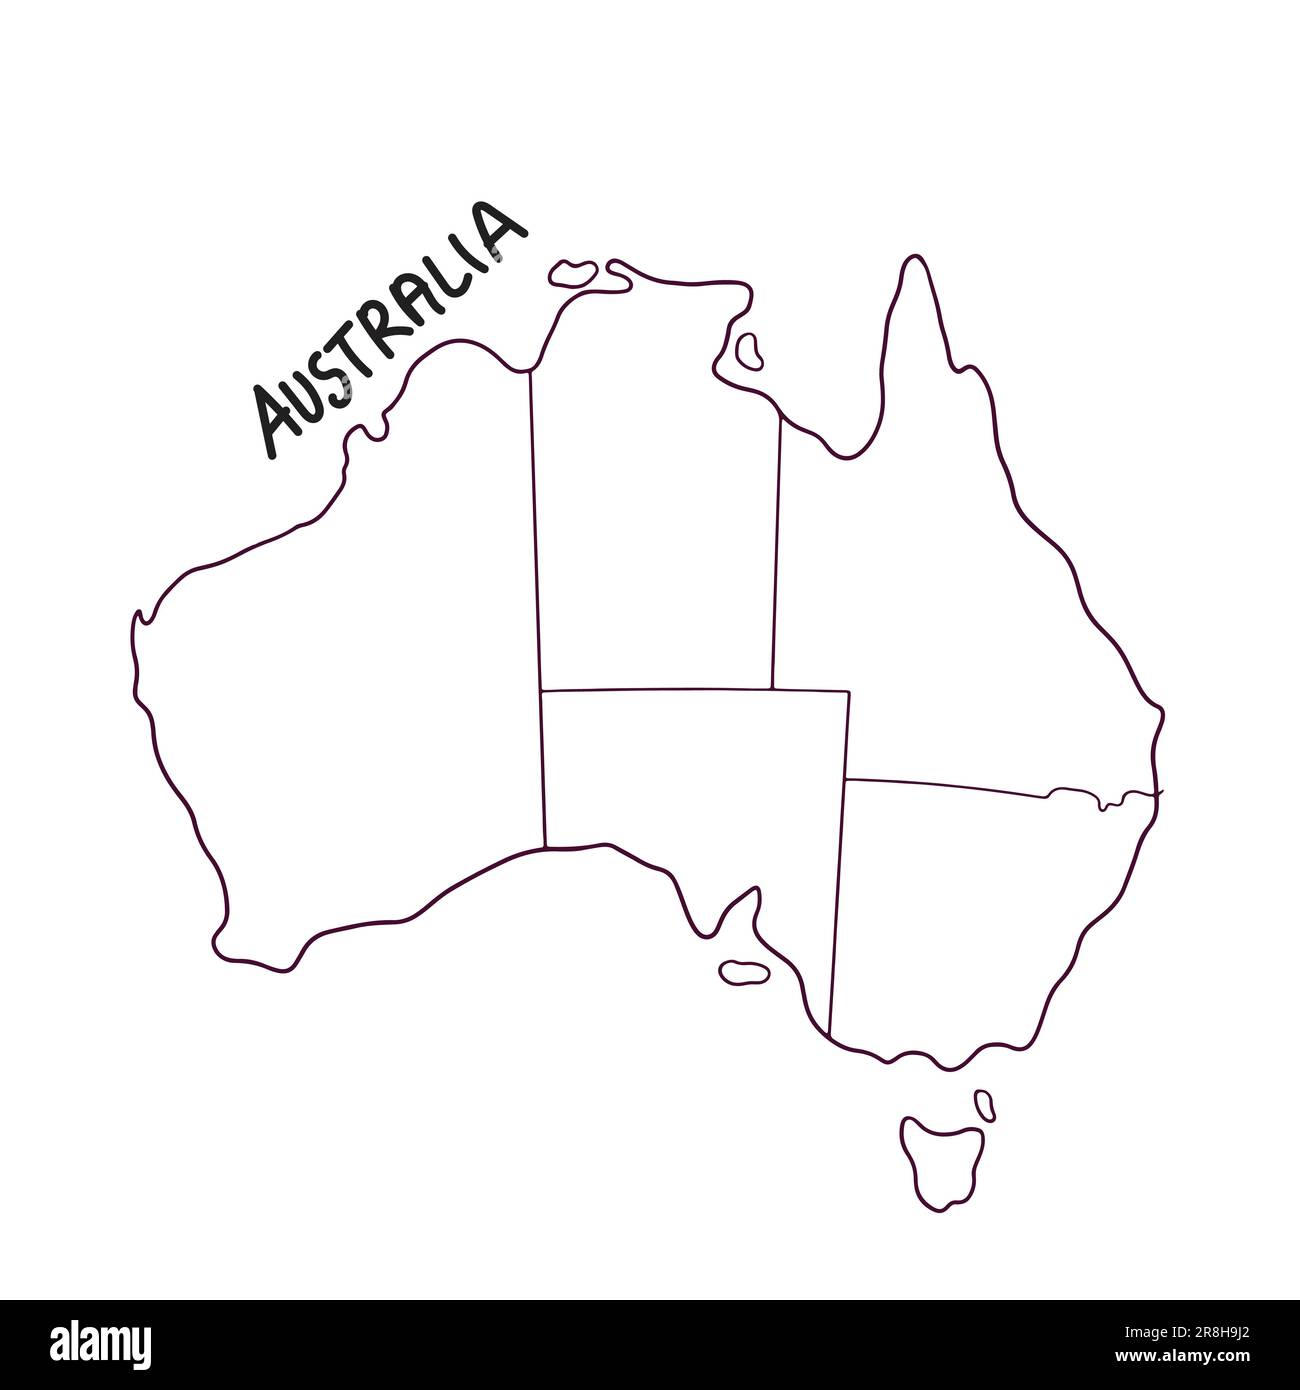 Handgezeichnete Landkarte Australiens Stock Vektor